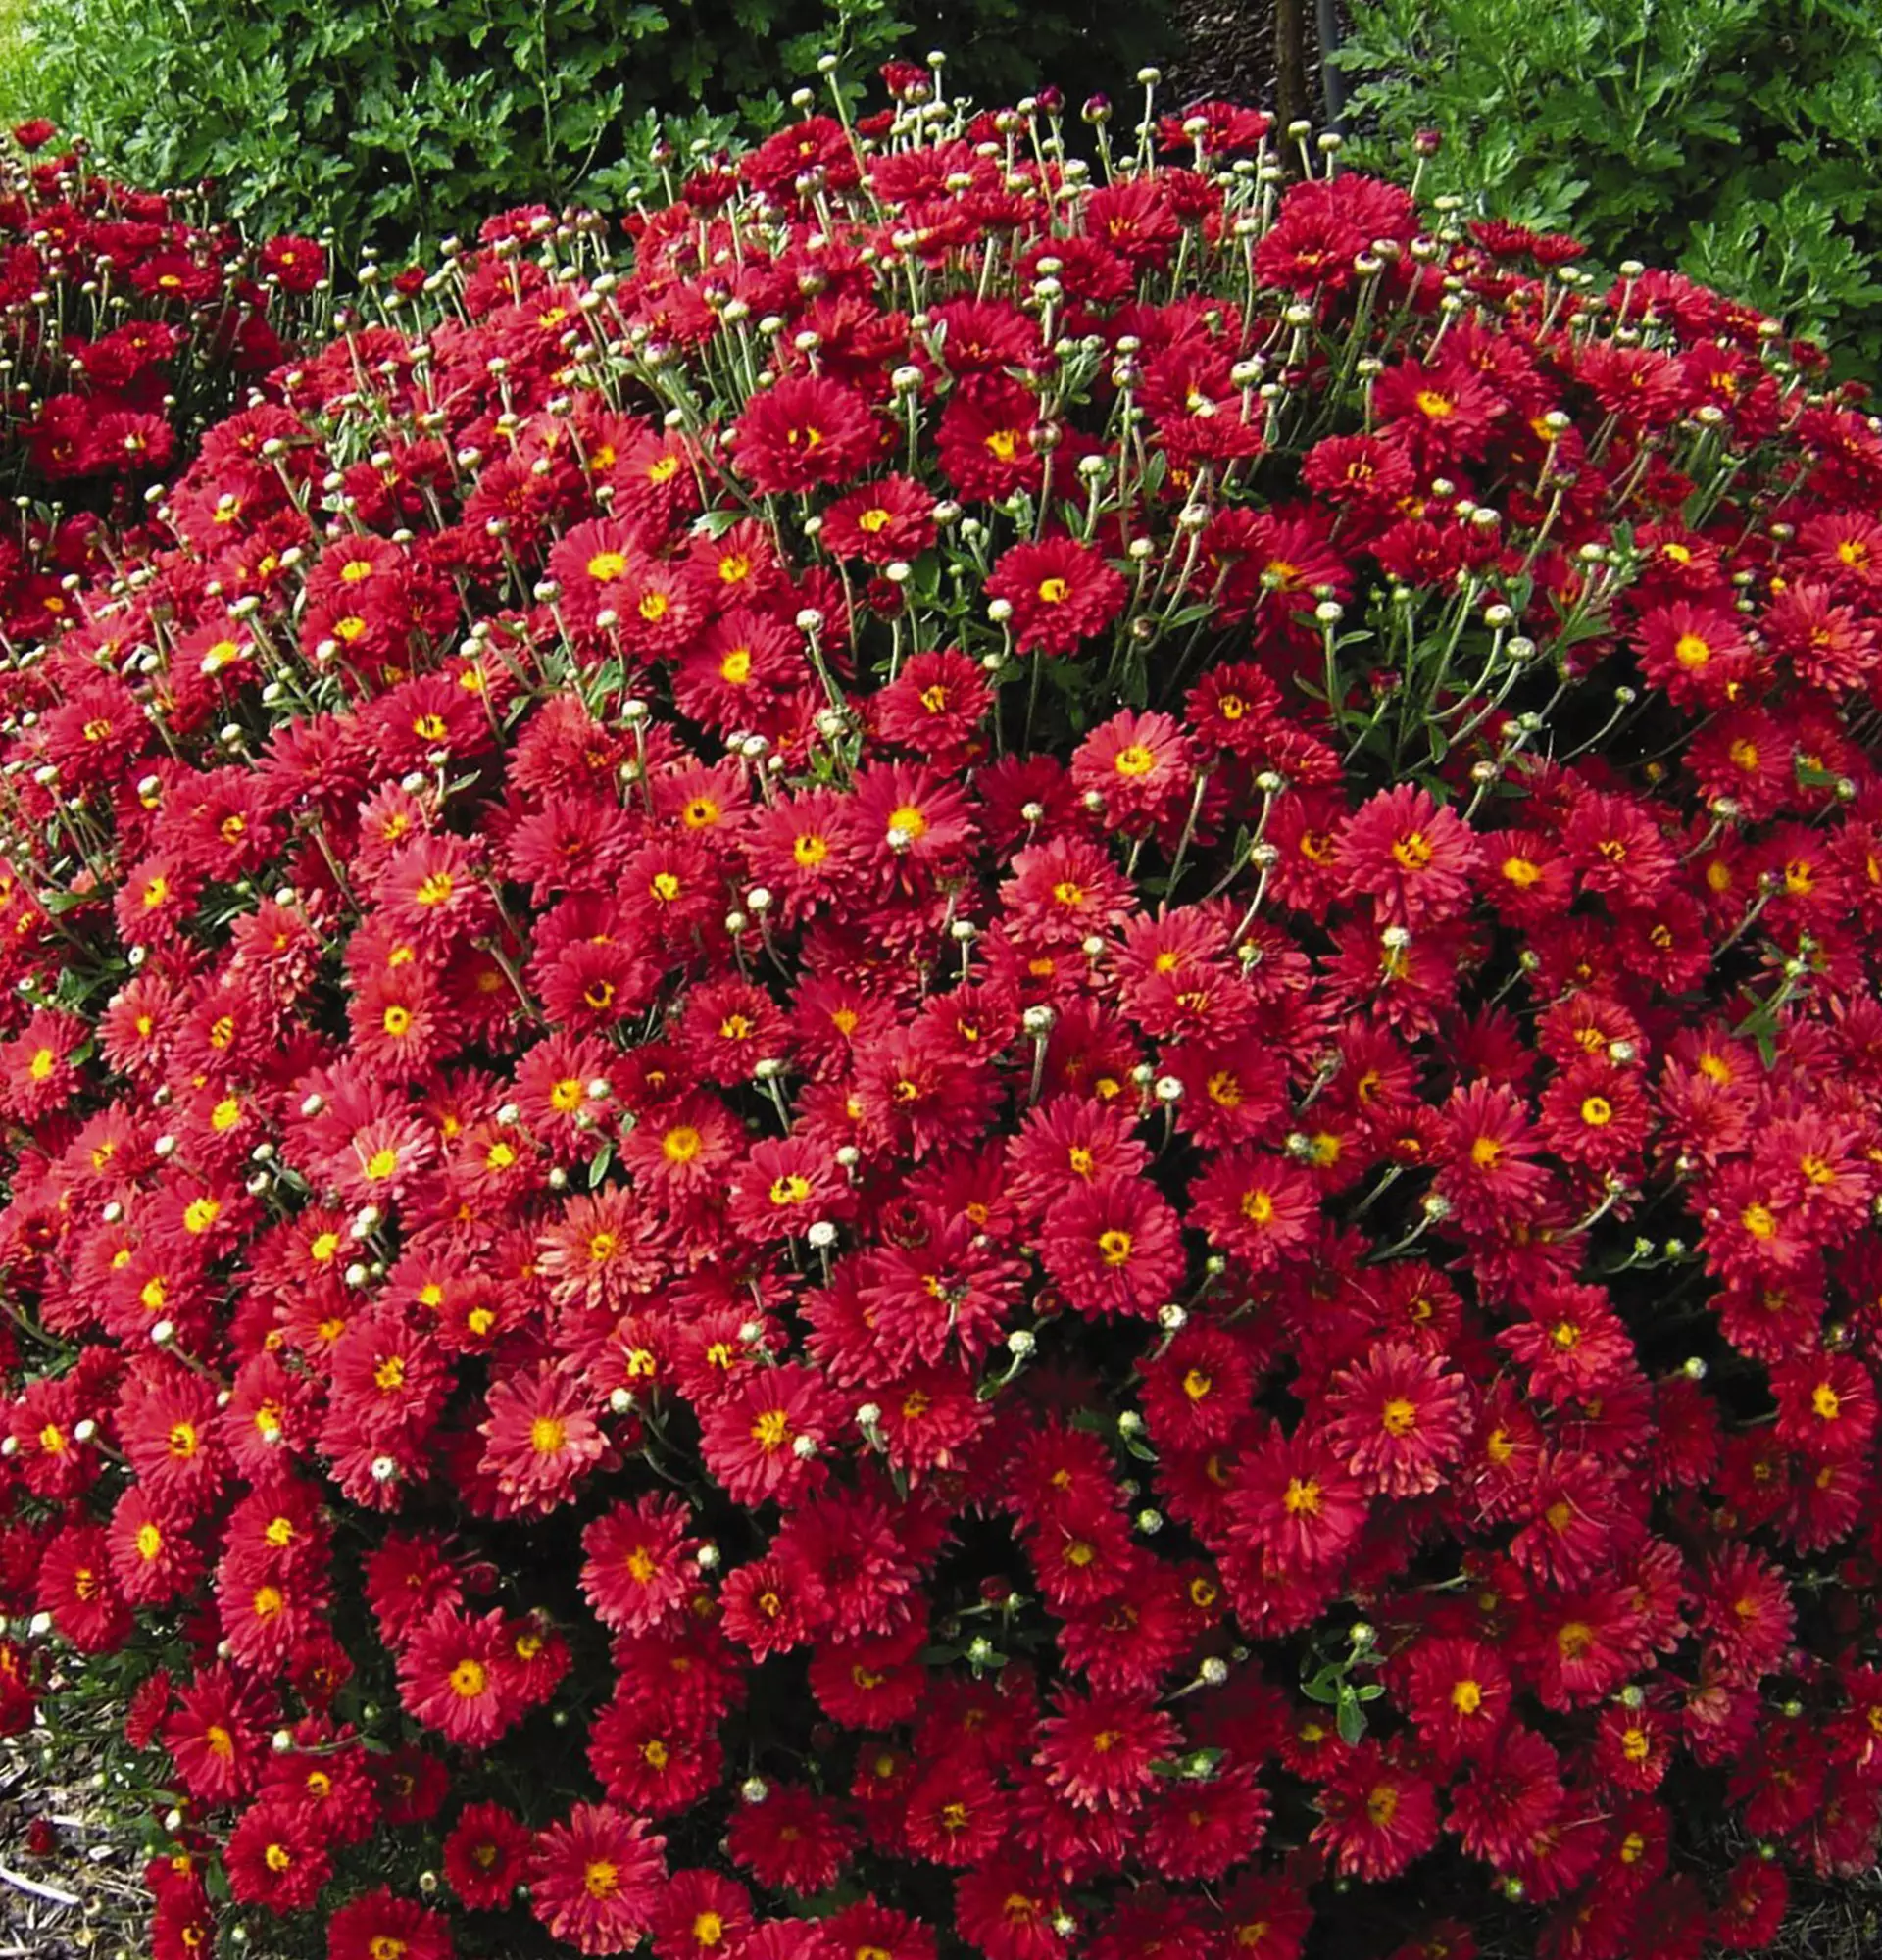 Kugelförmiges Foto der Chrysanthemen - rote Blumen